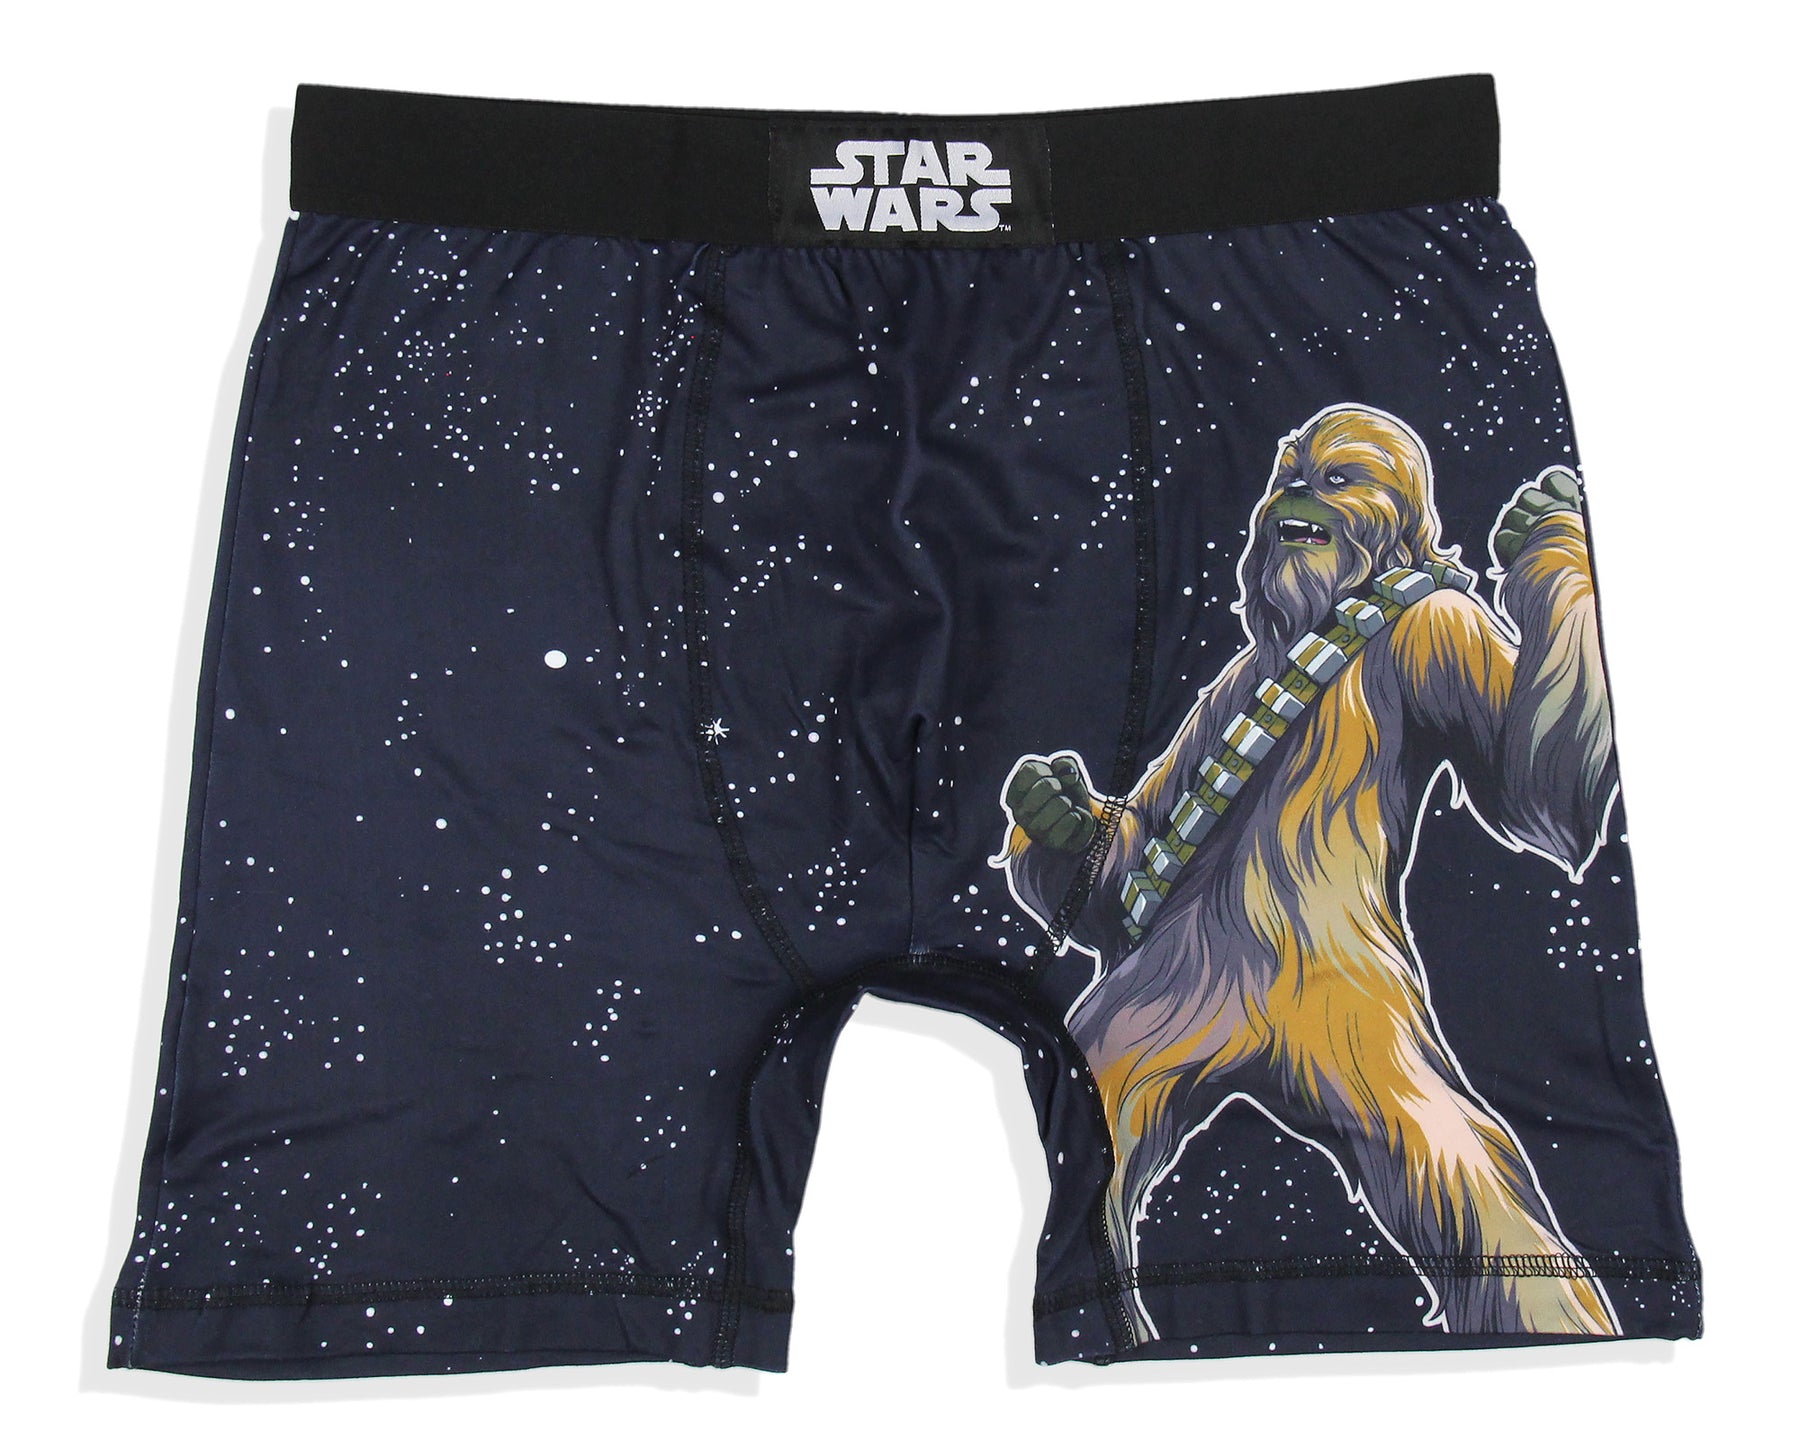 Star Wars Mens' 2 Pack Chewbacca Boxers Underwear Boxer Briefs – PJammy